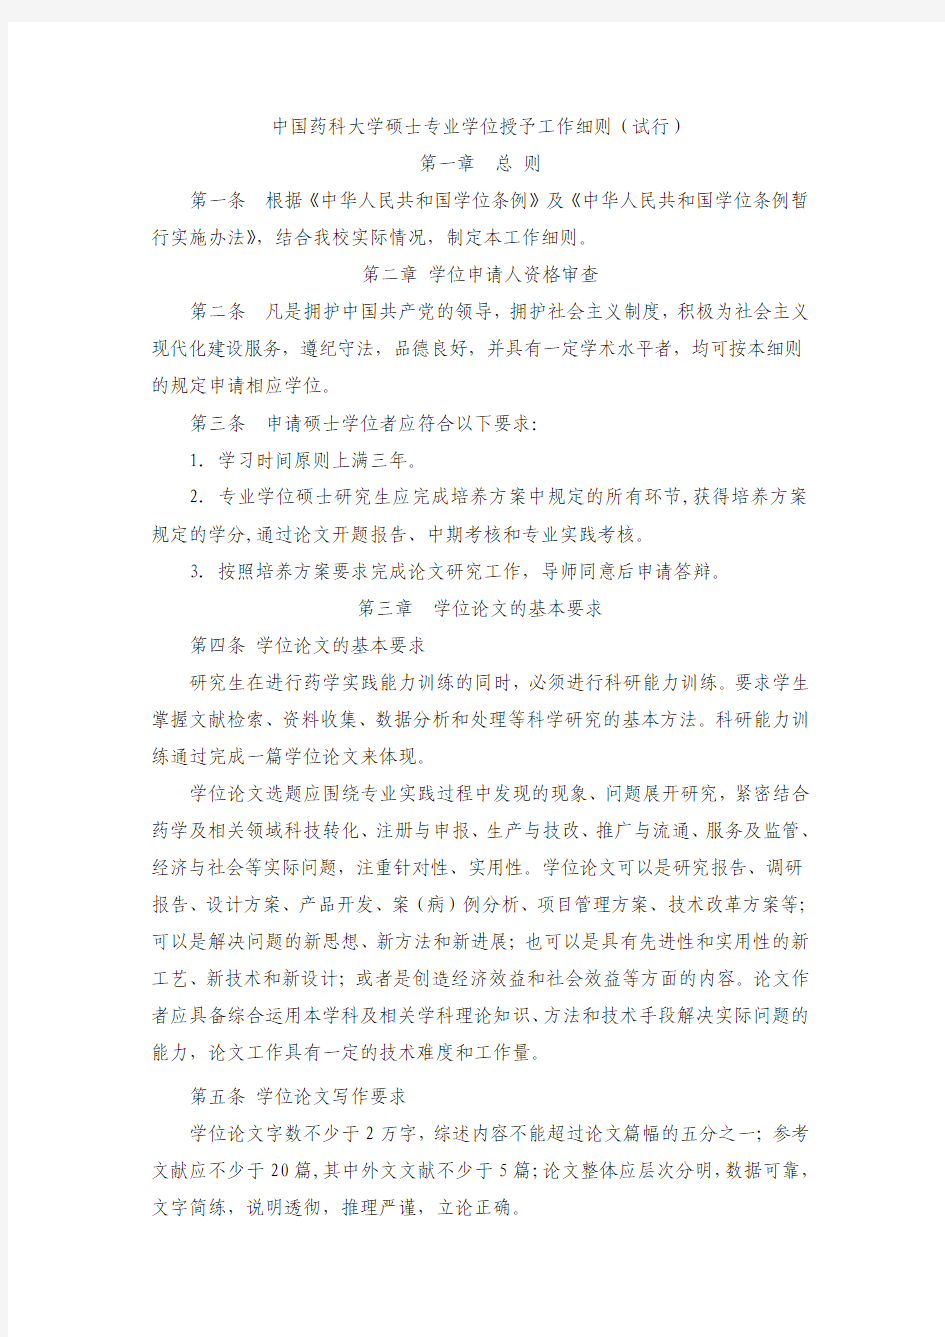 中国药科大学硕士专业学位授予工作细则(试行)